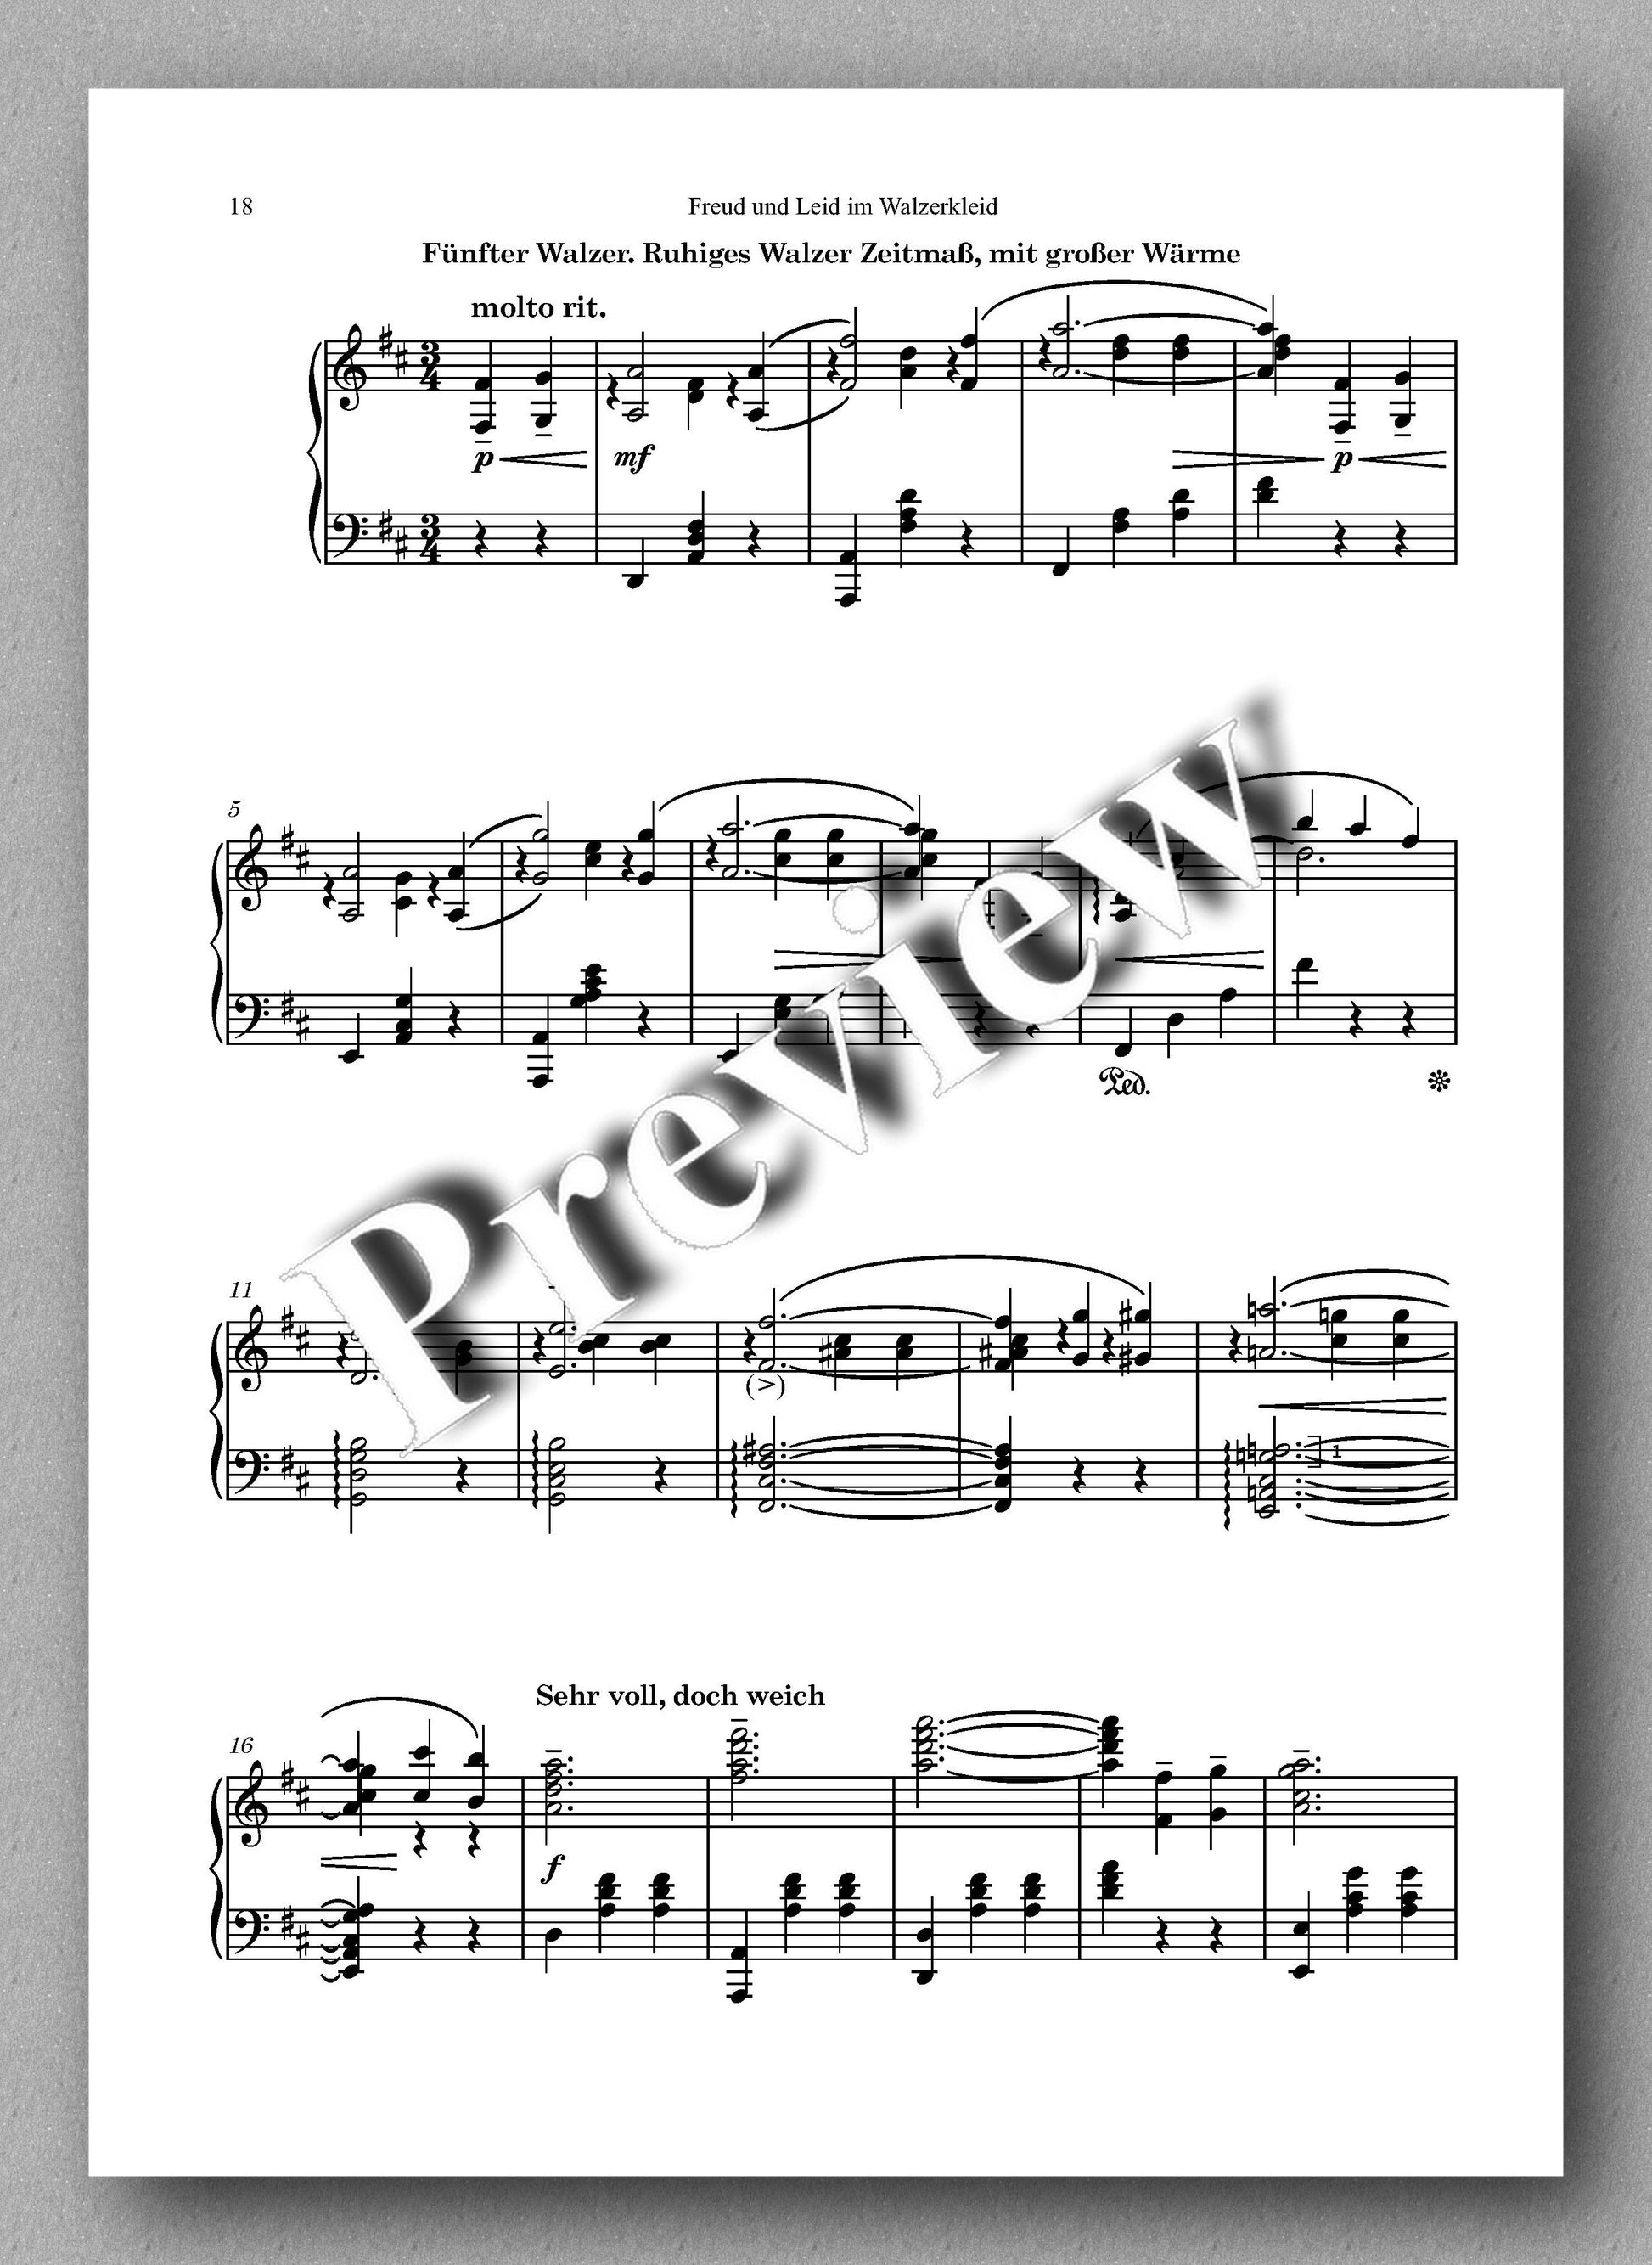 Rebay, Klavier No. 6, Freud und Leid im Walzerkleid - music score 3